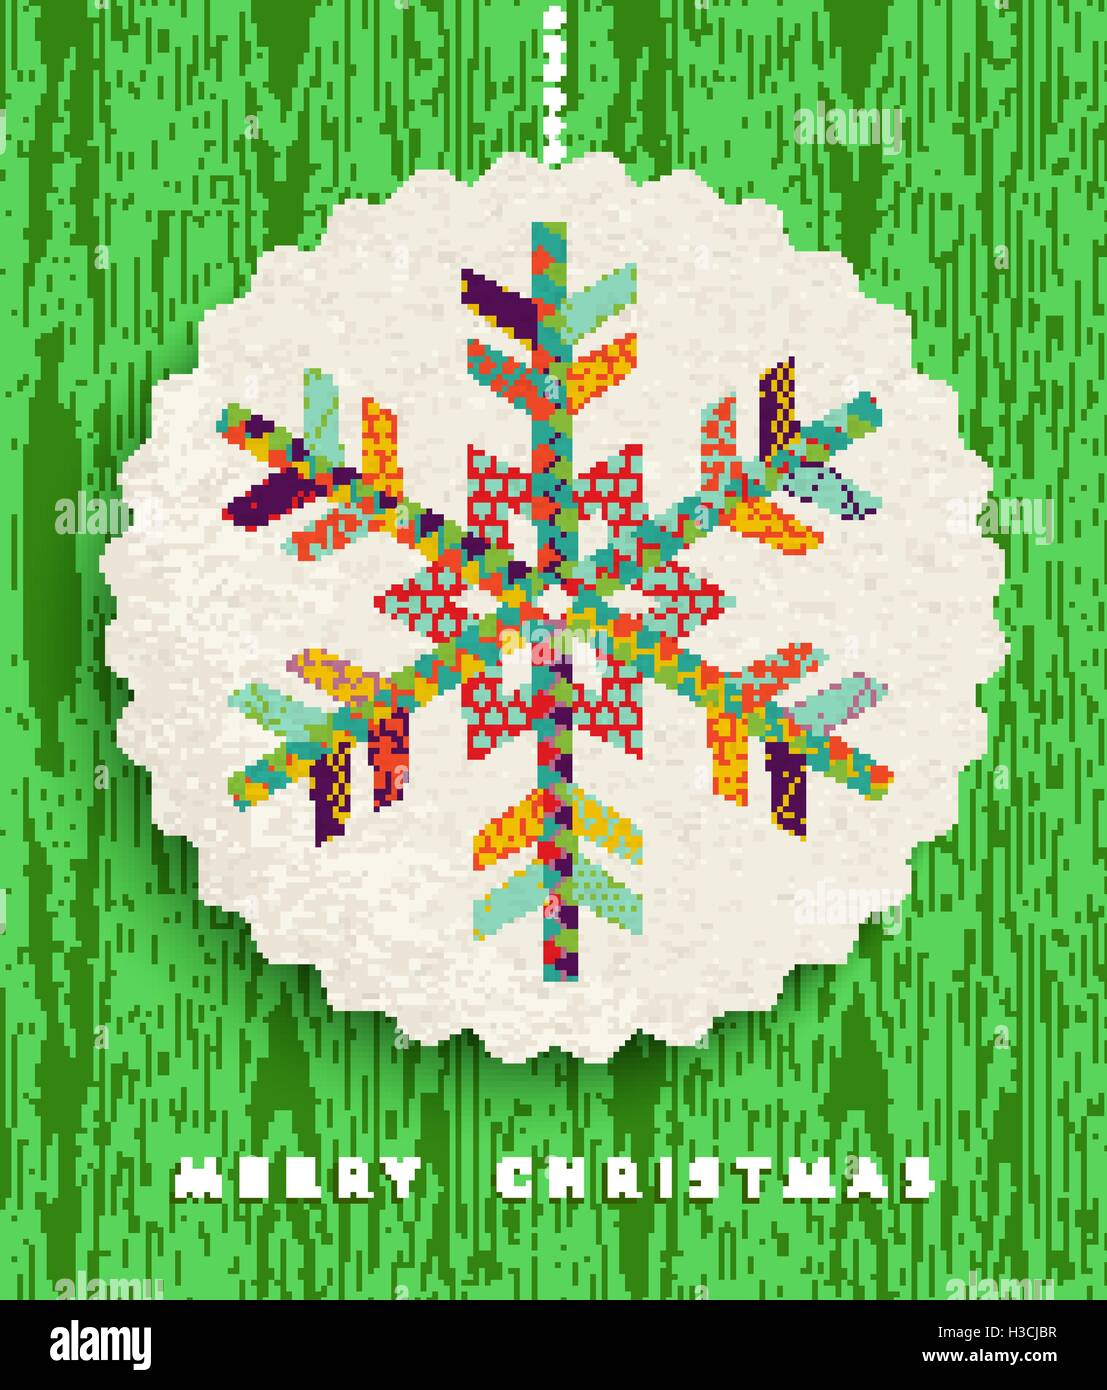 Joyeux Noël carte de souhaits design, illustration réalisée flocon colorés de formes géométriques et heureux de couleurs. Vecteur EPS10 Illustration de Vecteur